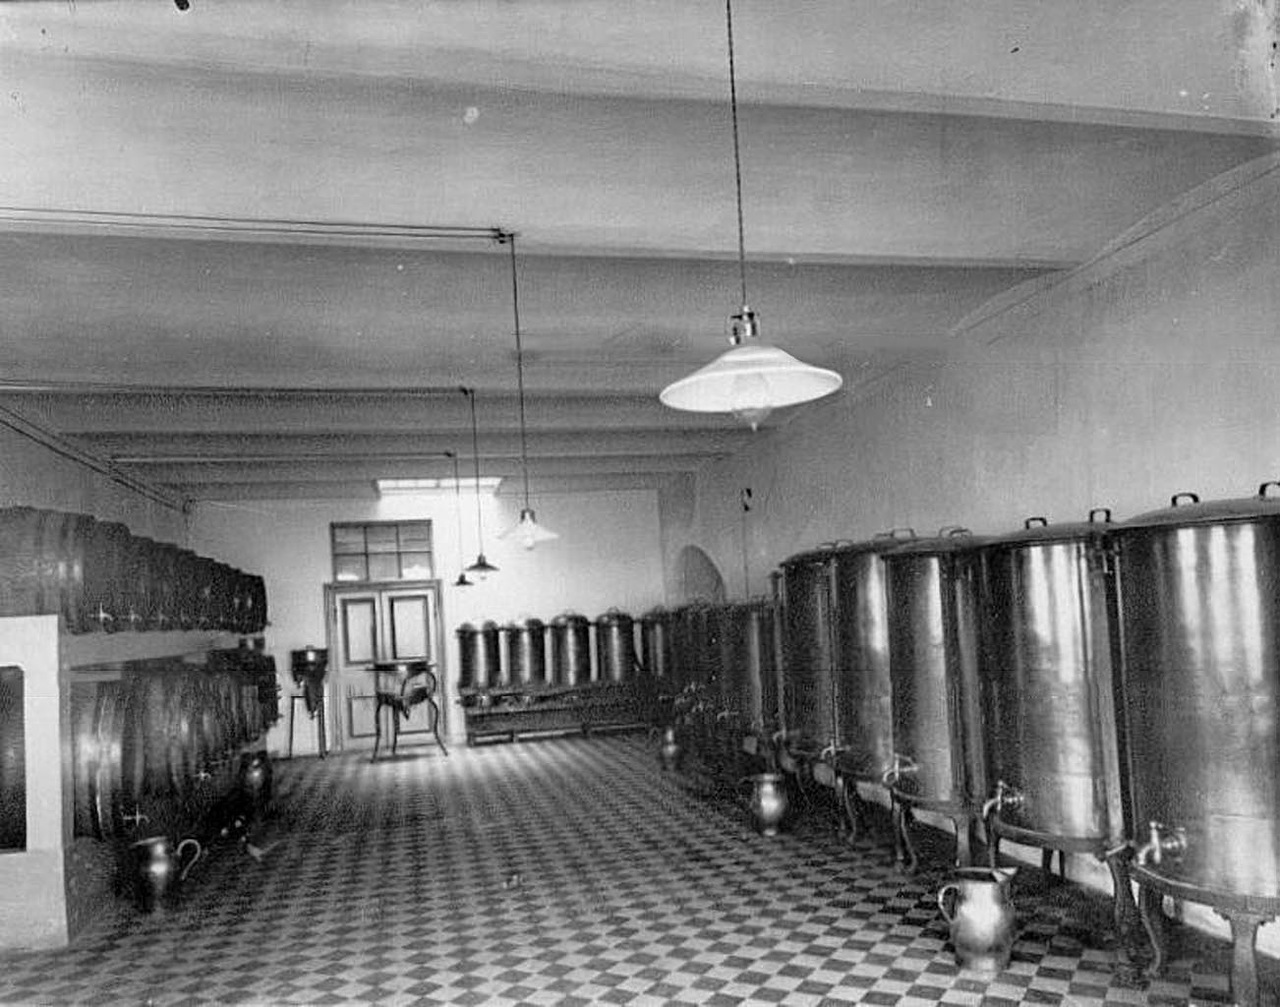 En 1911, Keller & K° reçut le Grand-Prix de l’Exposition universelle de Turin. Après avoir remporté de nombreuses récompenses, la compagnie a obtenu en Italie sa première distinction majeure. Ironiquement, l’obtention de ce prix a précédé de peu les lois sur la prohibition introduites en Russie au début de la Première Guerre mondiale. // Une cave à vin.